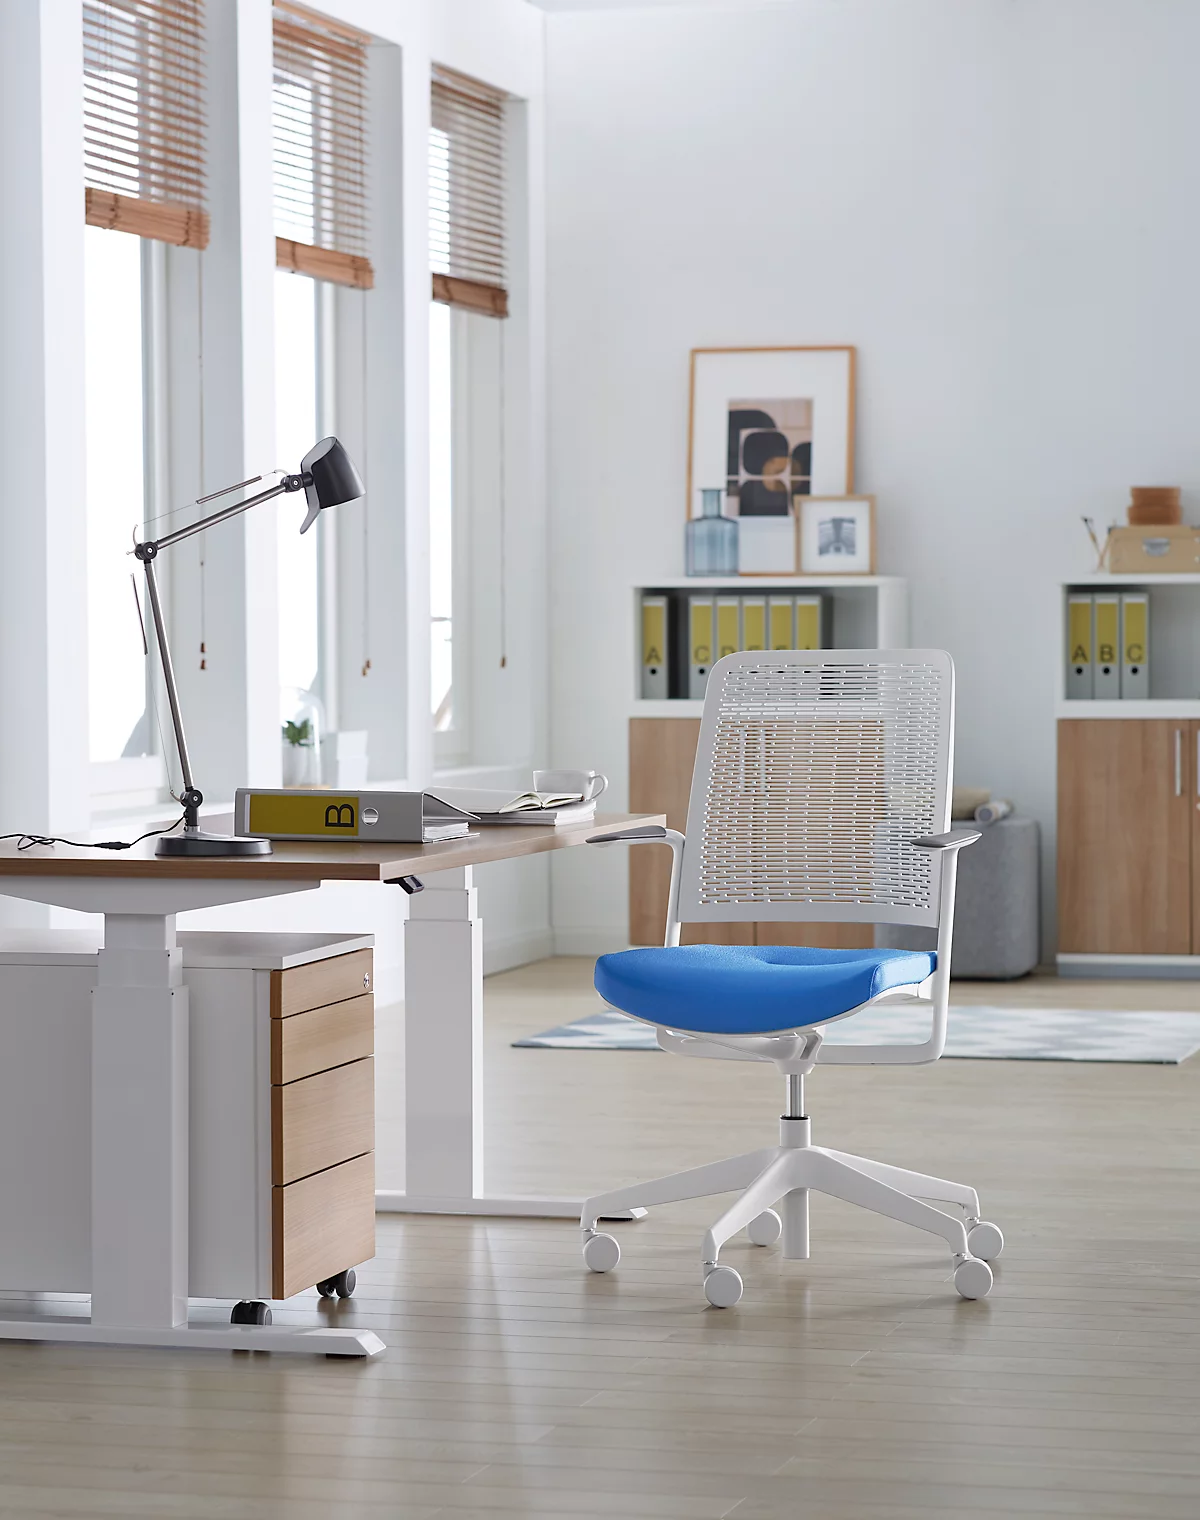 Bürostuhl WithMe, mit Armlehnen, Auto-Synchronmechanik, Flachsitz, perforierter Kunststoffrücken, abnehmbarer Sitzbezug, hellgrau/hellblau